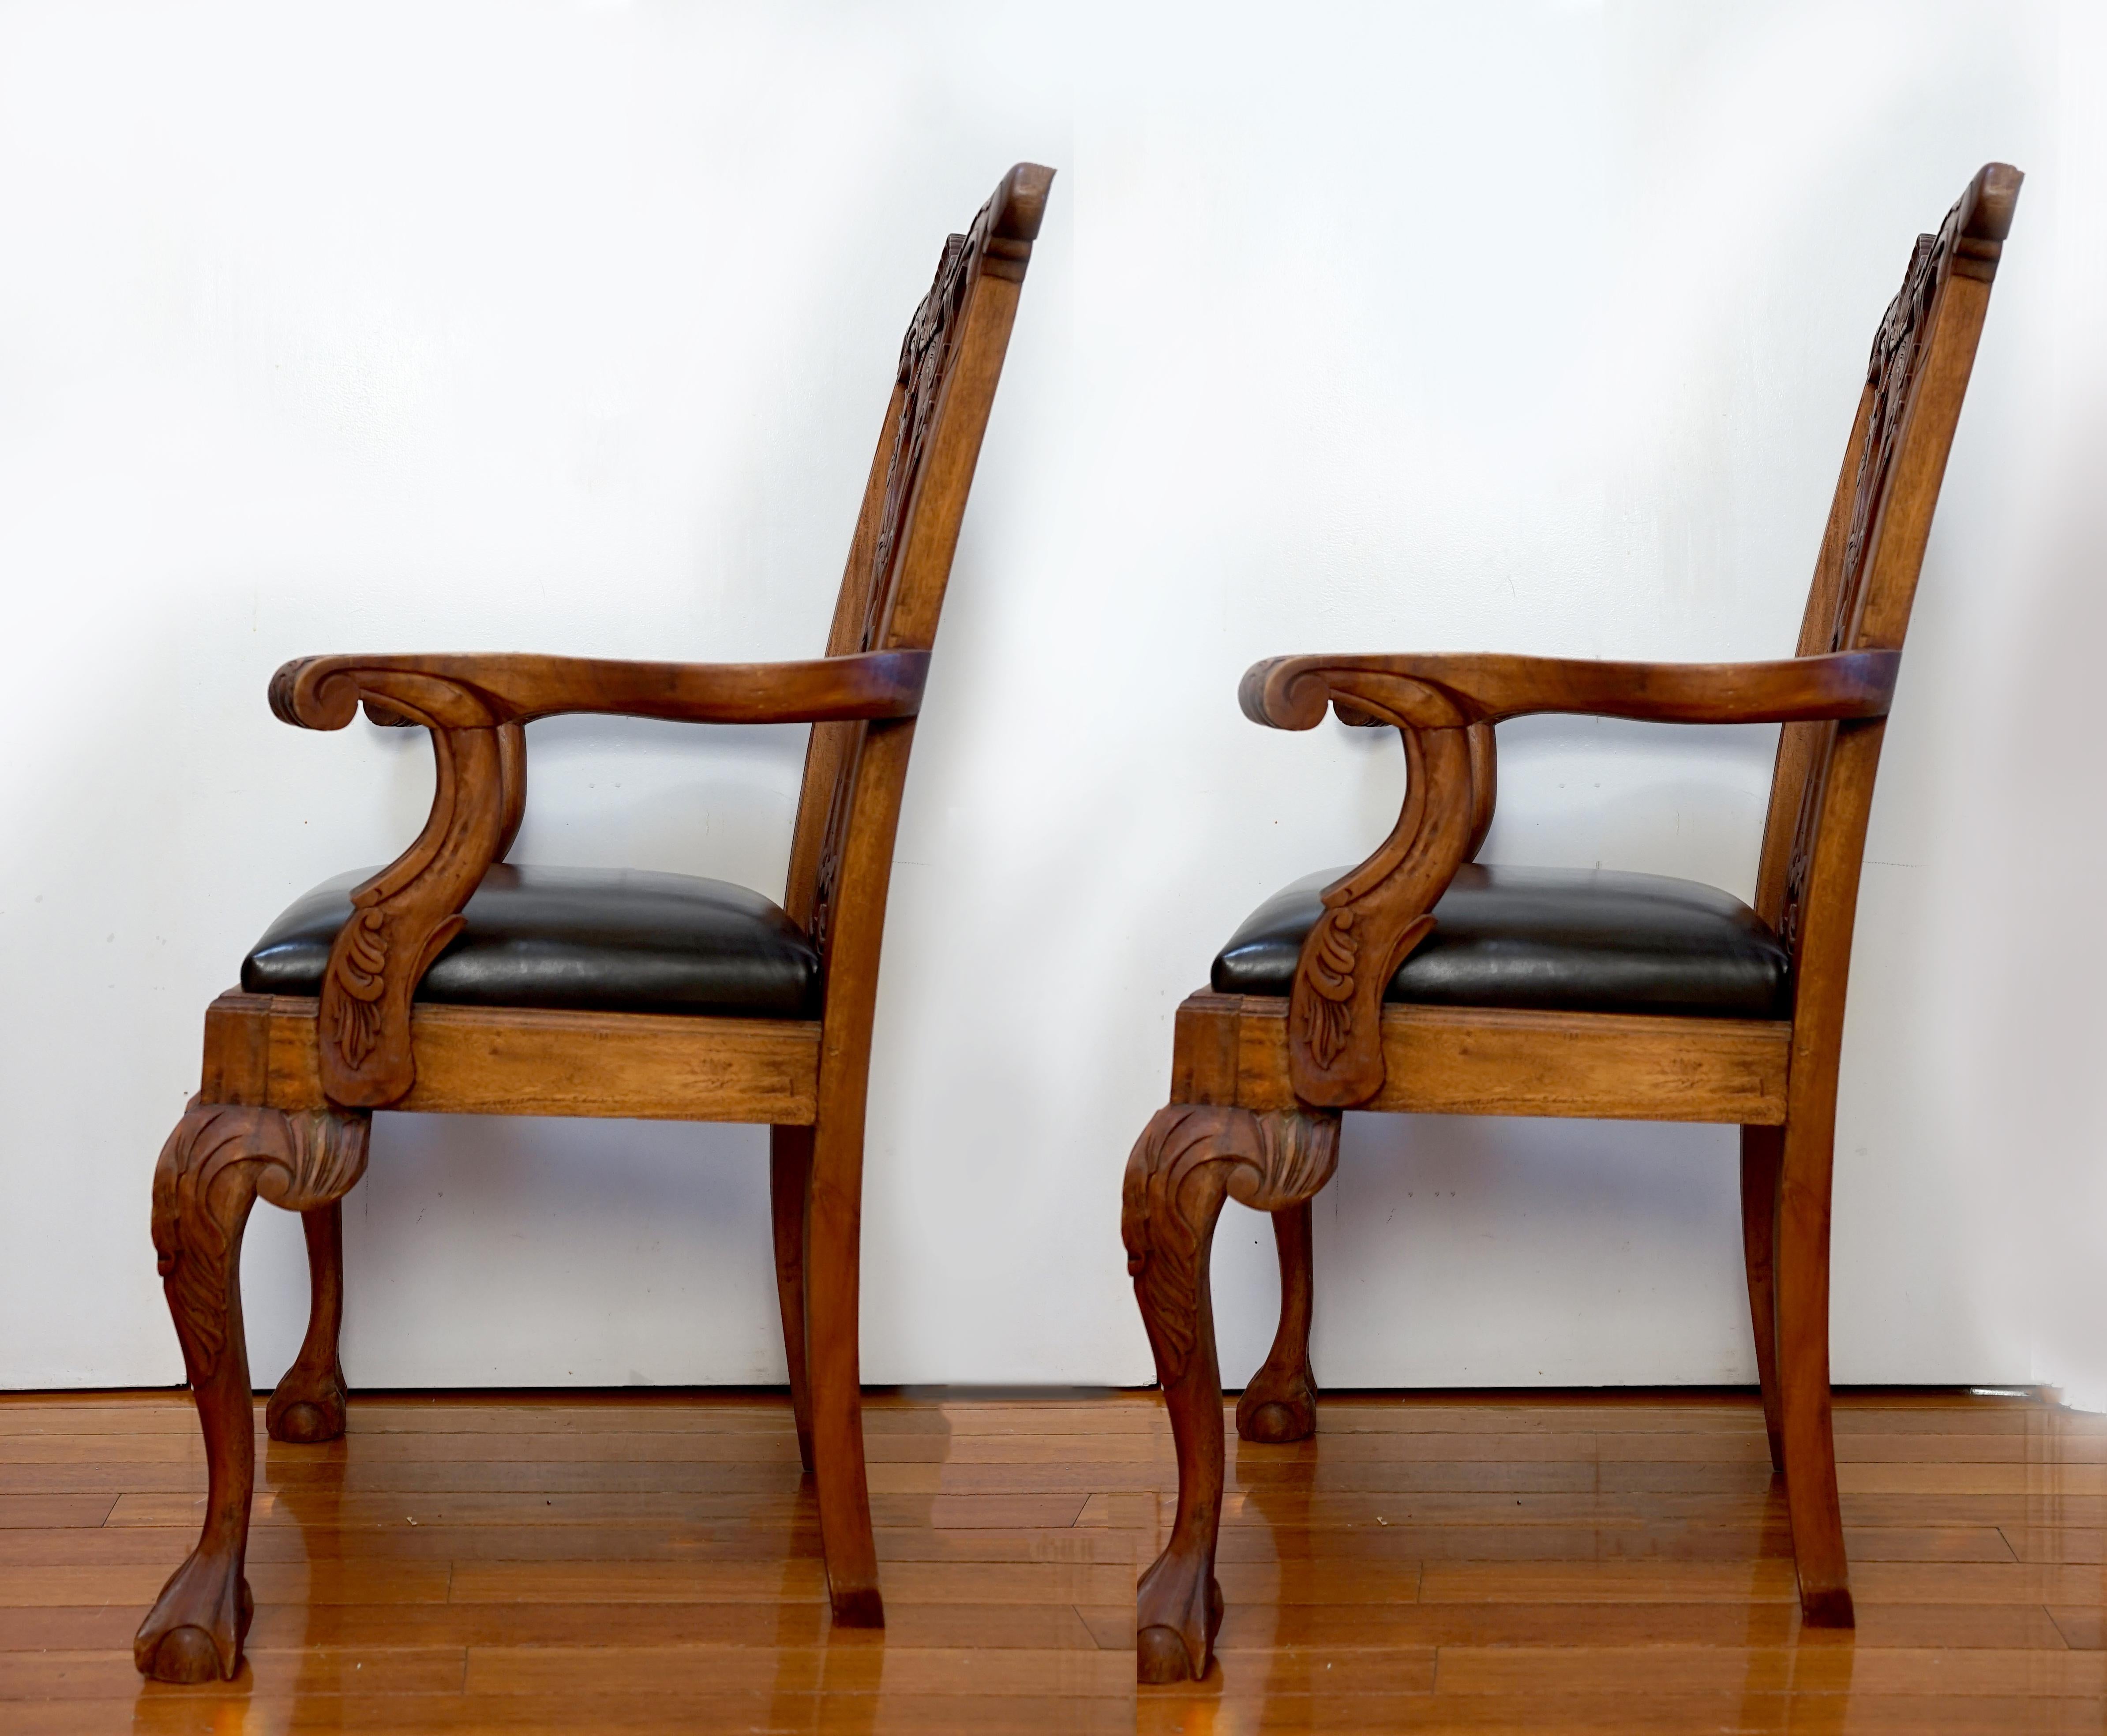 Le ton de la teinture et la manière dont elle complète l'acajou font que cette paire de fauteuils George III Chippendale se distingue. Les chaises datent d'environ 1920, et deux sont postérieures au premier quart du 20e siècle. La sculpture à la